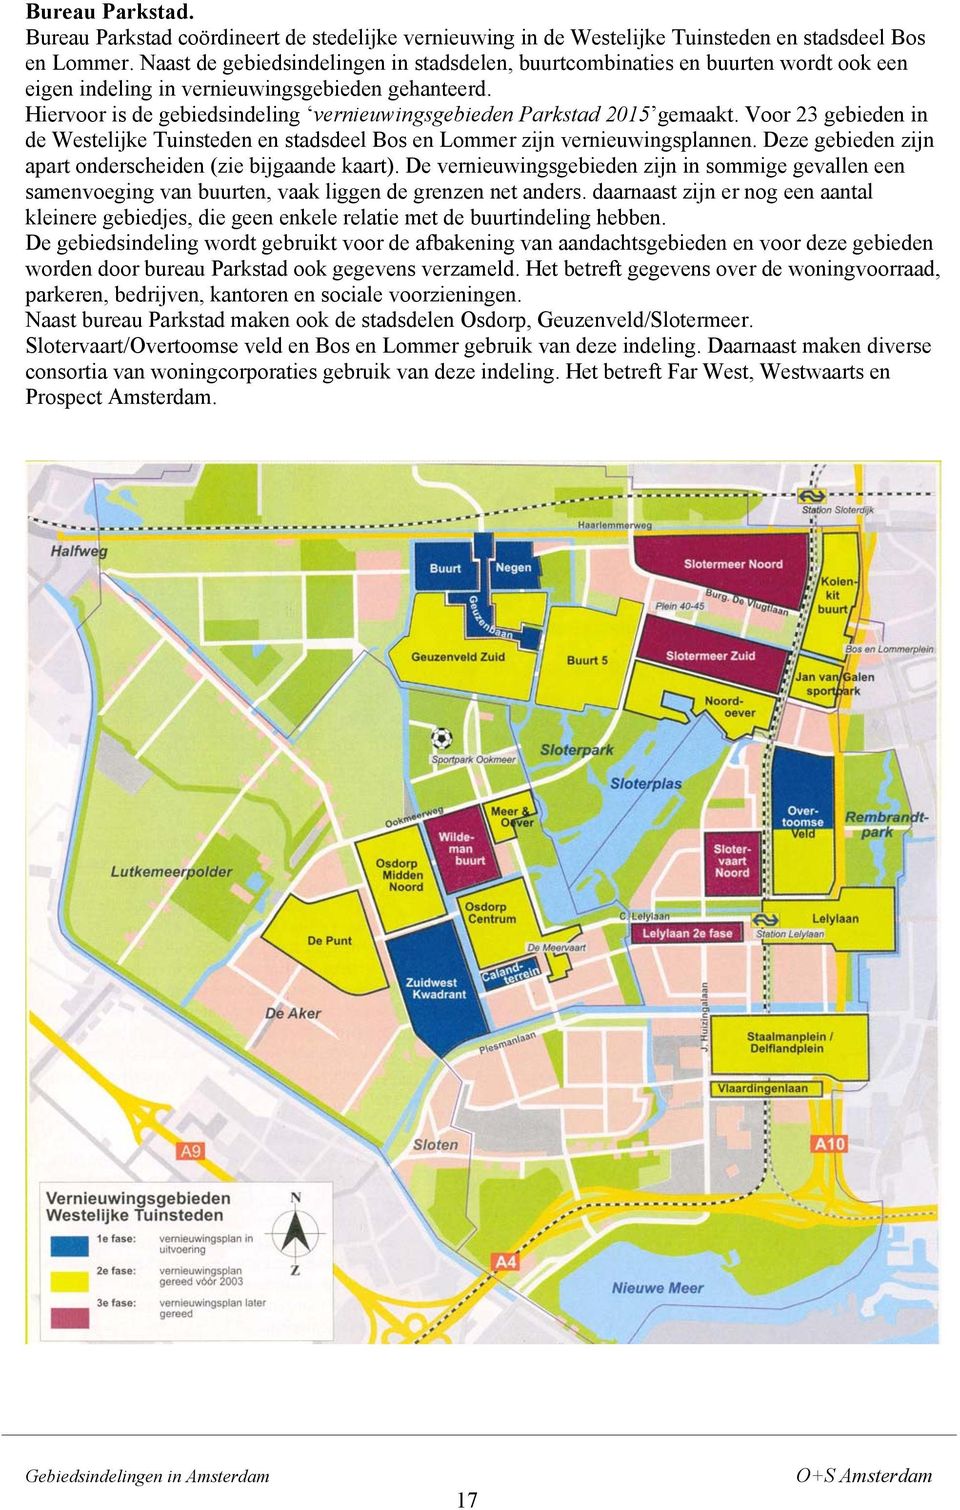 Hiervoor is de gebiedsindeling vernieuwingsgebieden Parkstad 2015 gemaakt. Voor 23 gebieden in de Westelijke Tuinsteden en stadsdeel Bos en Lommer zijn vernieuwingsplannen.